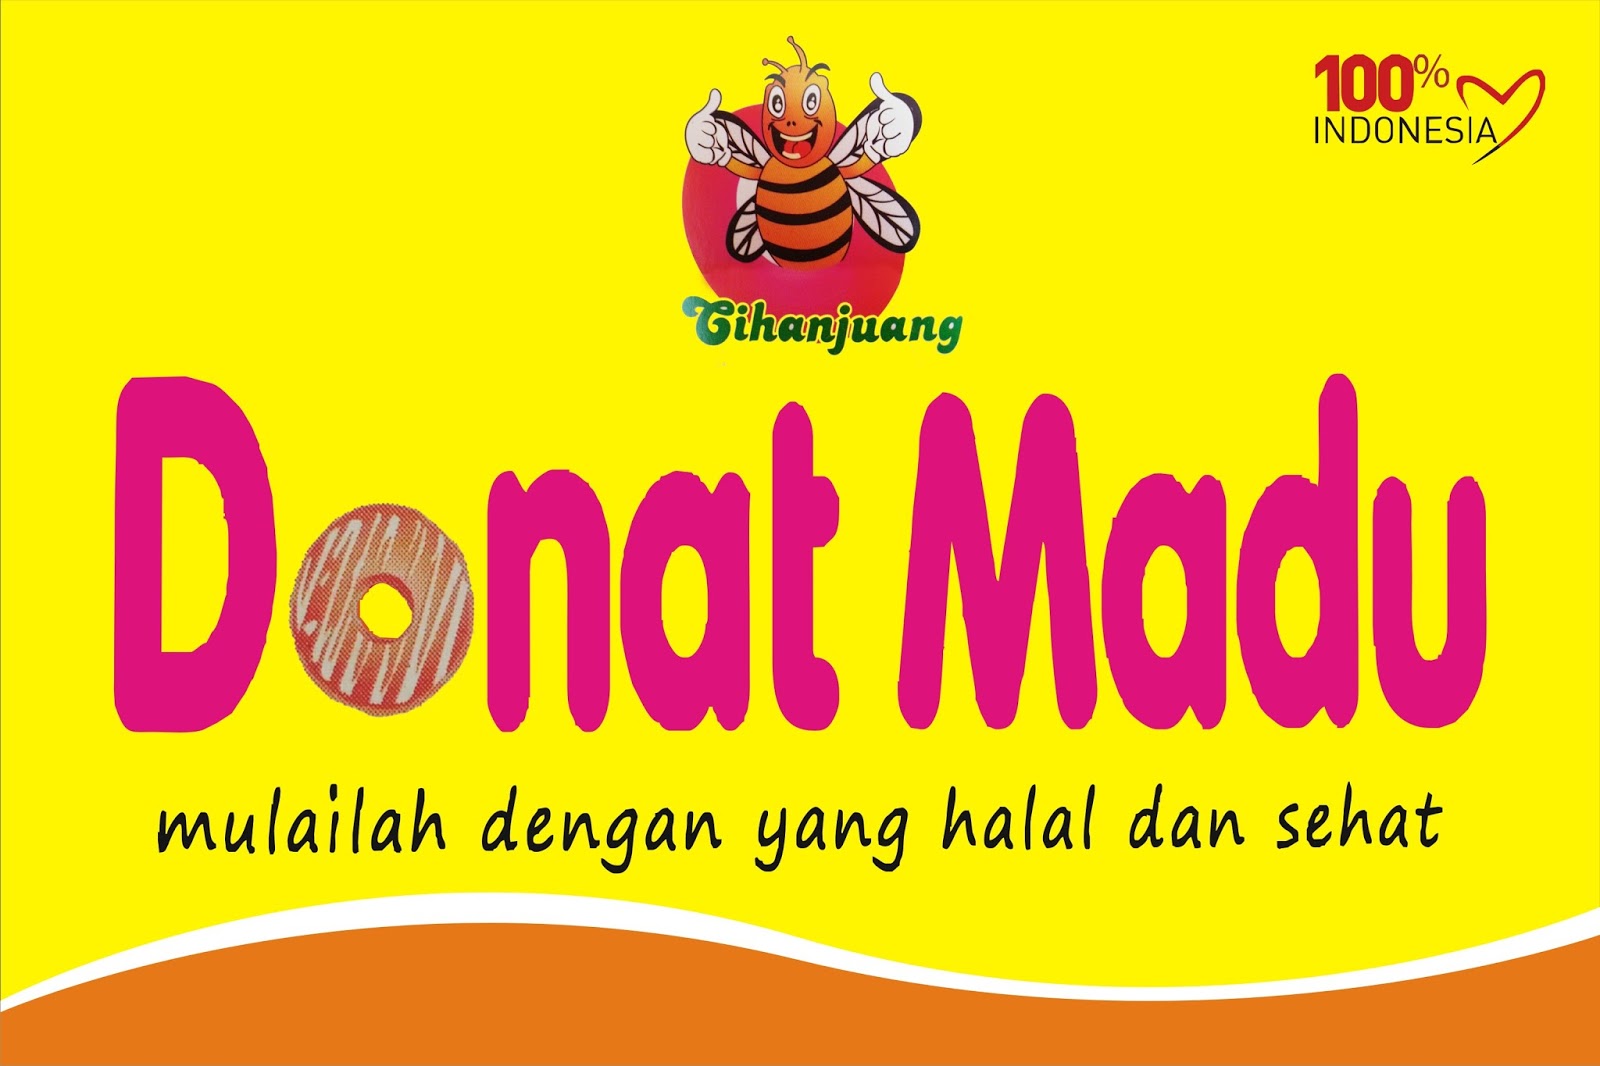 Download Contoh Spanduk Donat Madu.cdr  KARYAKU